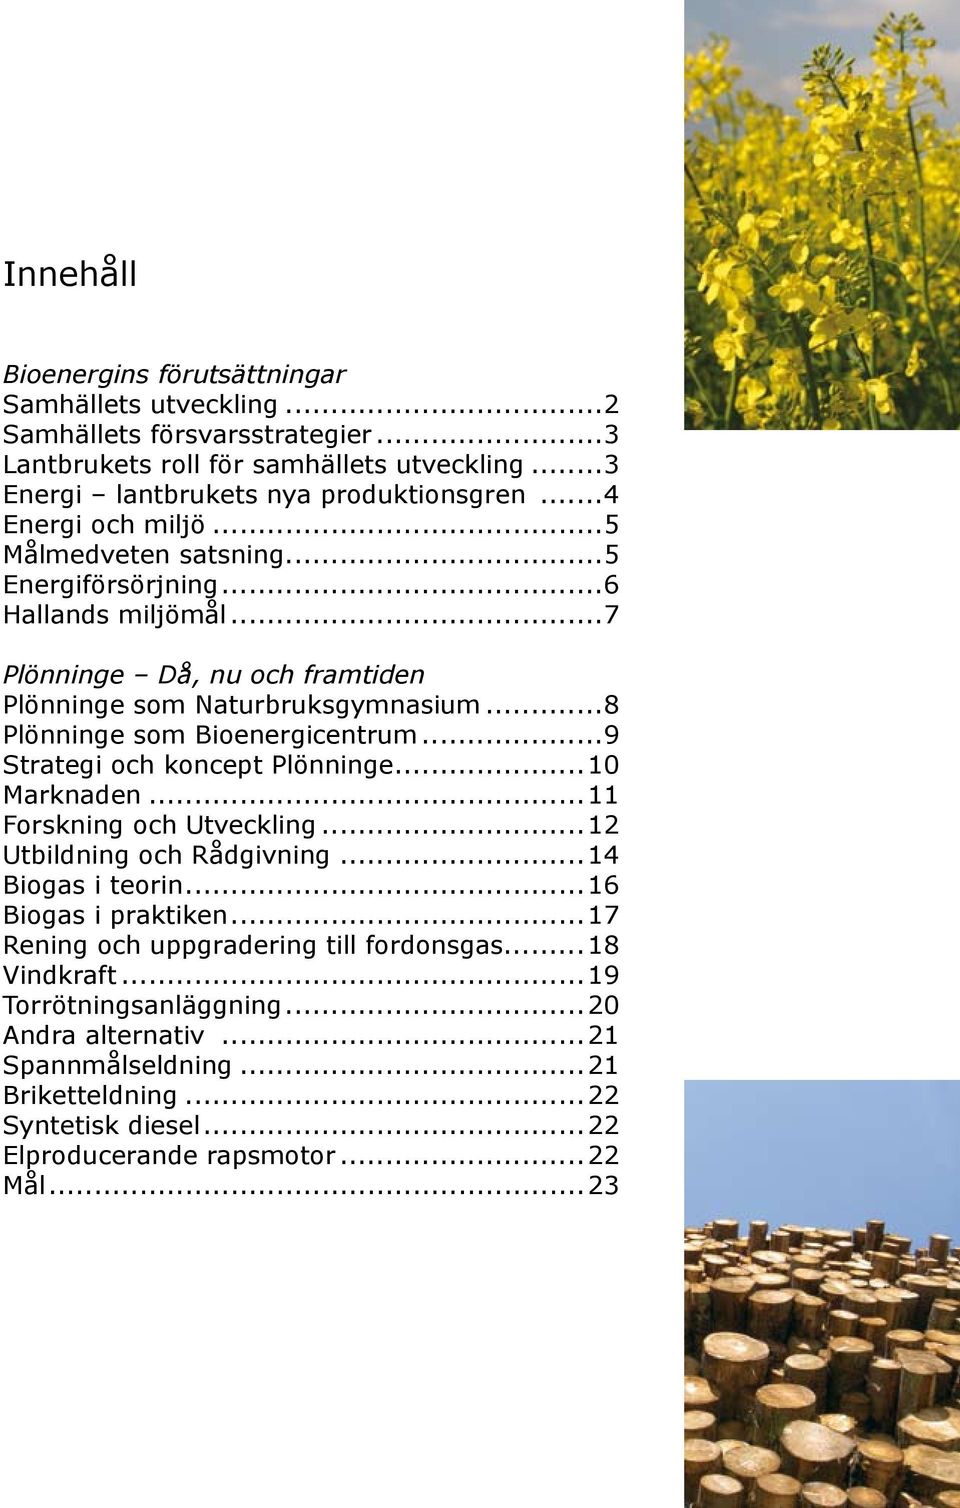 ..8 Plönninge som Bioenergicentrum...9 Strategi och koncept Plönninge...10 Marknaden...11 Forskning och Utveckling...12 Utbildning och Rådgivning...14 Biogas i teorin.